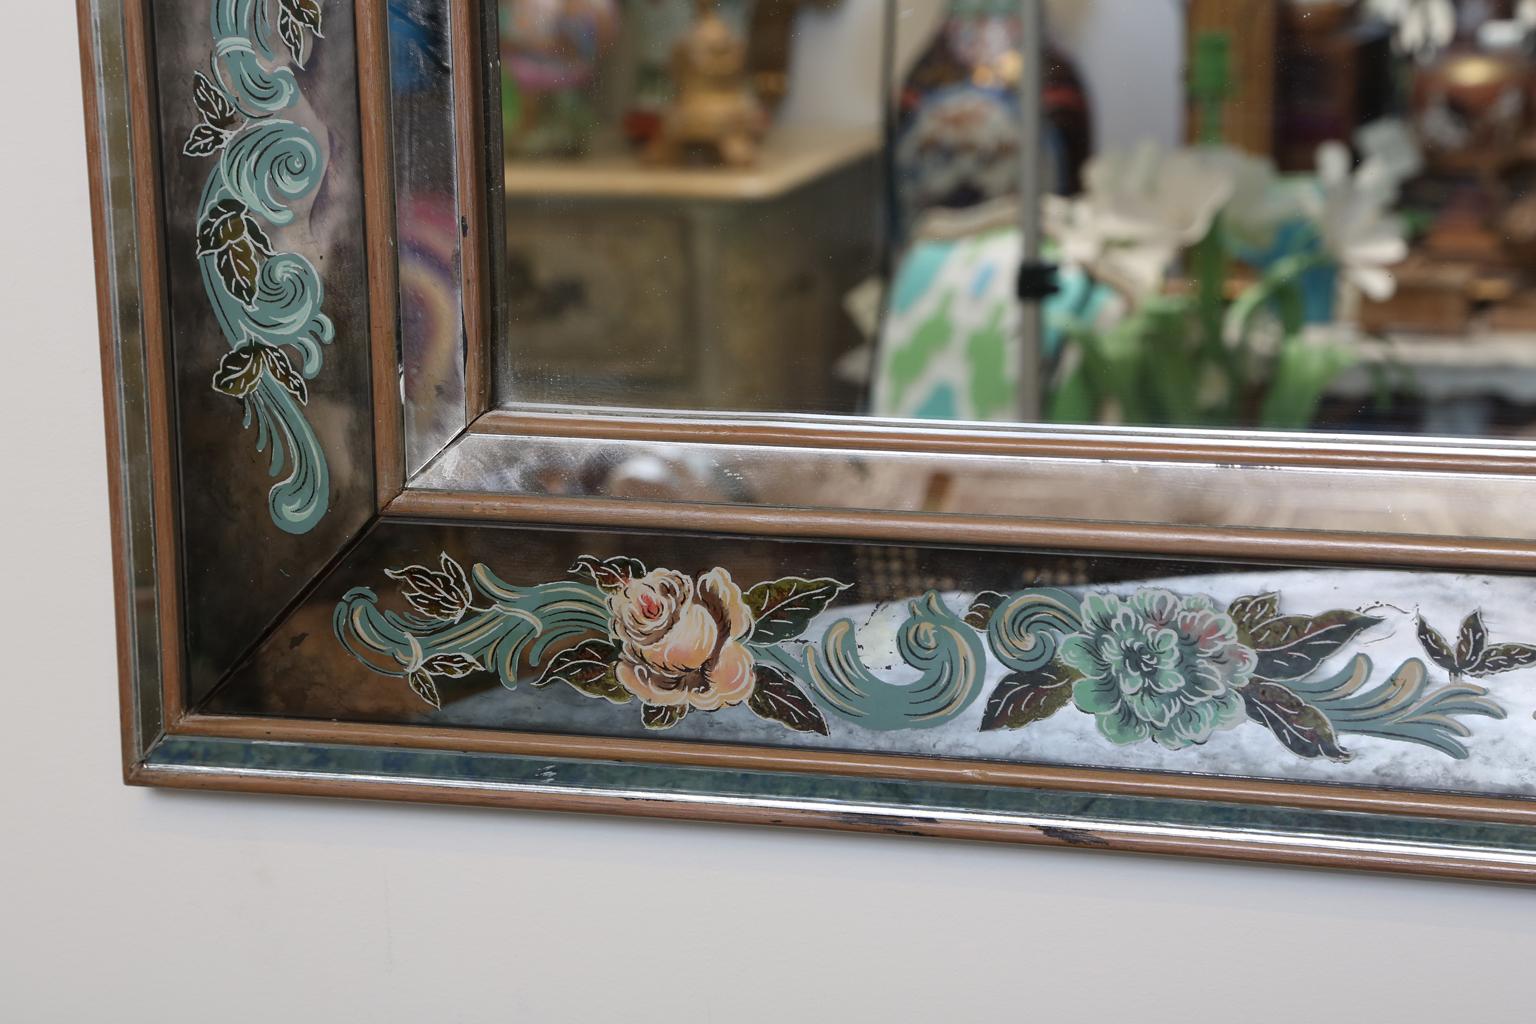 Miroir, avec un cadre rectangulaire de reliefs munis d'une mitre, une bordure églomisée peinte à la main.

Stock ID : D2050.